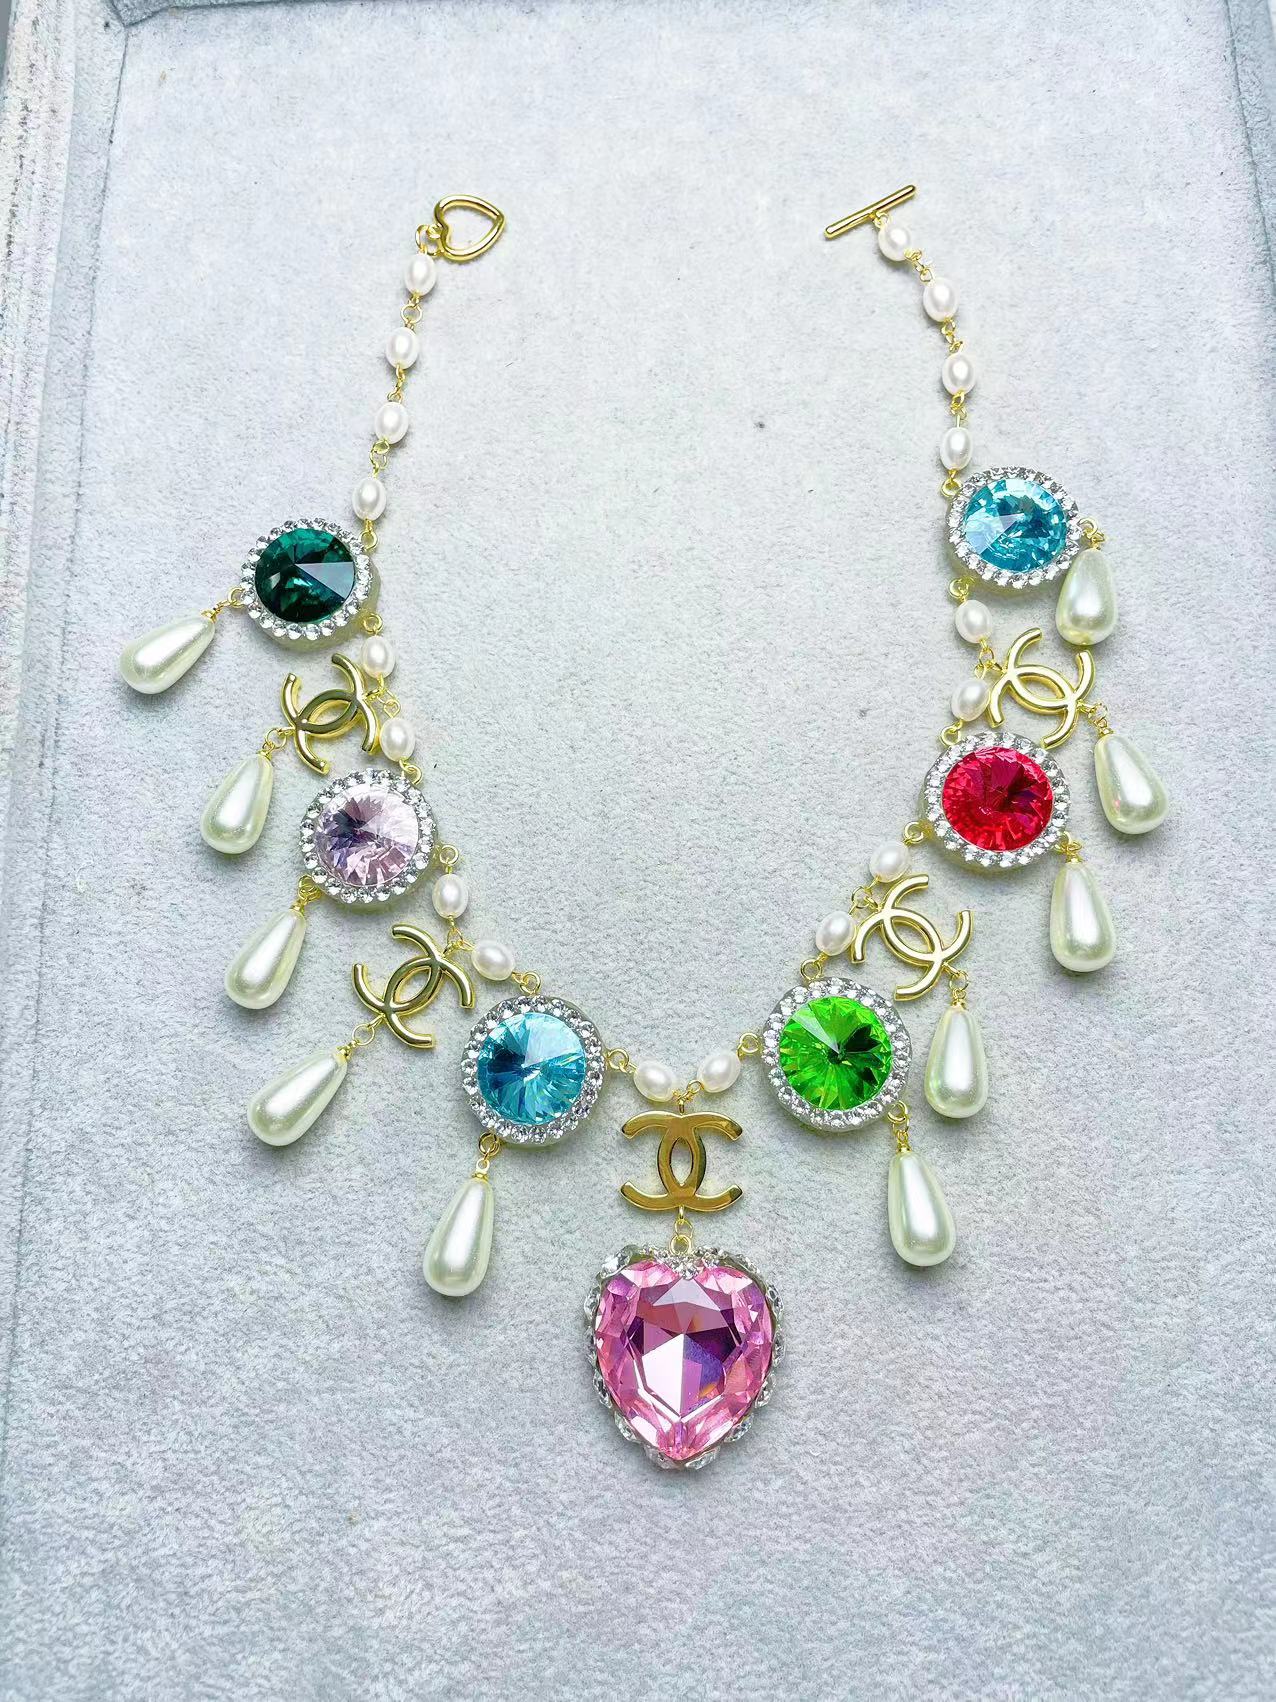 Babie Necklace -Barbie Movie/Film - Margot Robbie - Handmade Crystal  Diamond Gemstone Elegant Necklace - Barbie's Jewlery